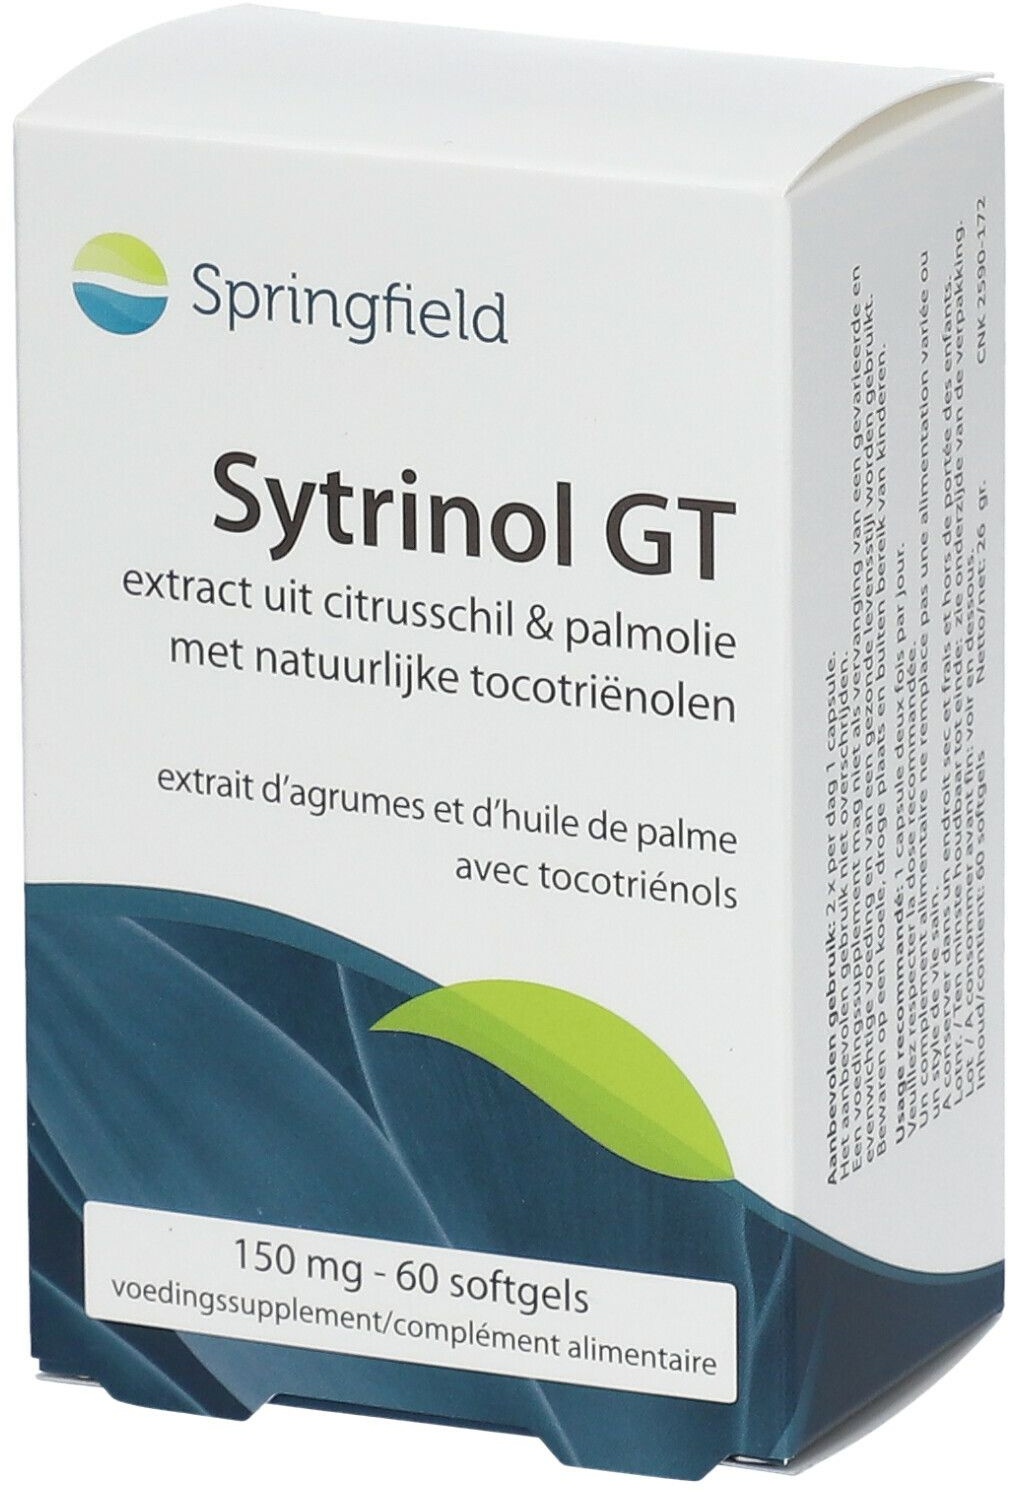 Springfield Sytrinol GT 60 pc(s) capsule(s)